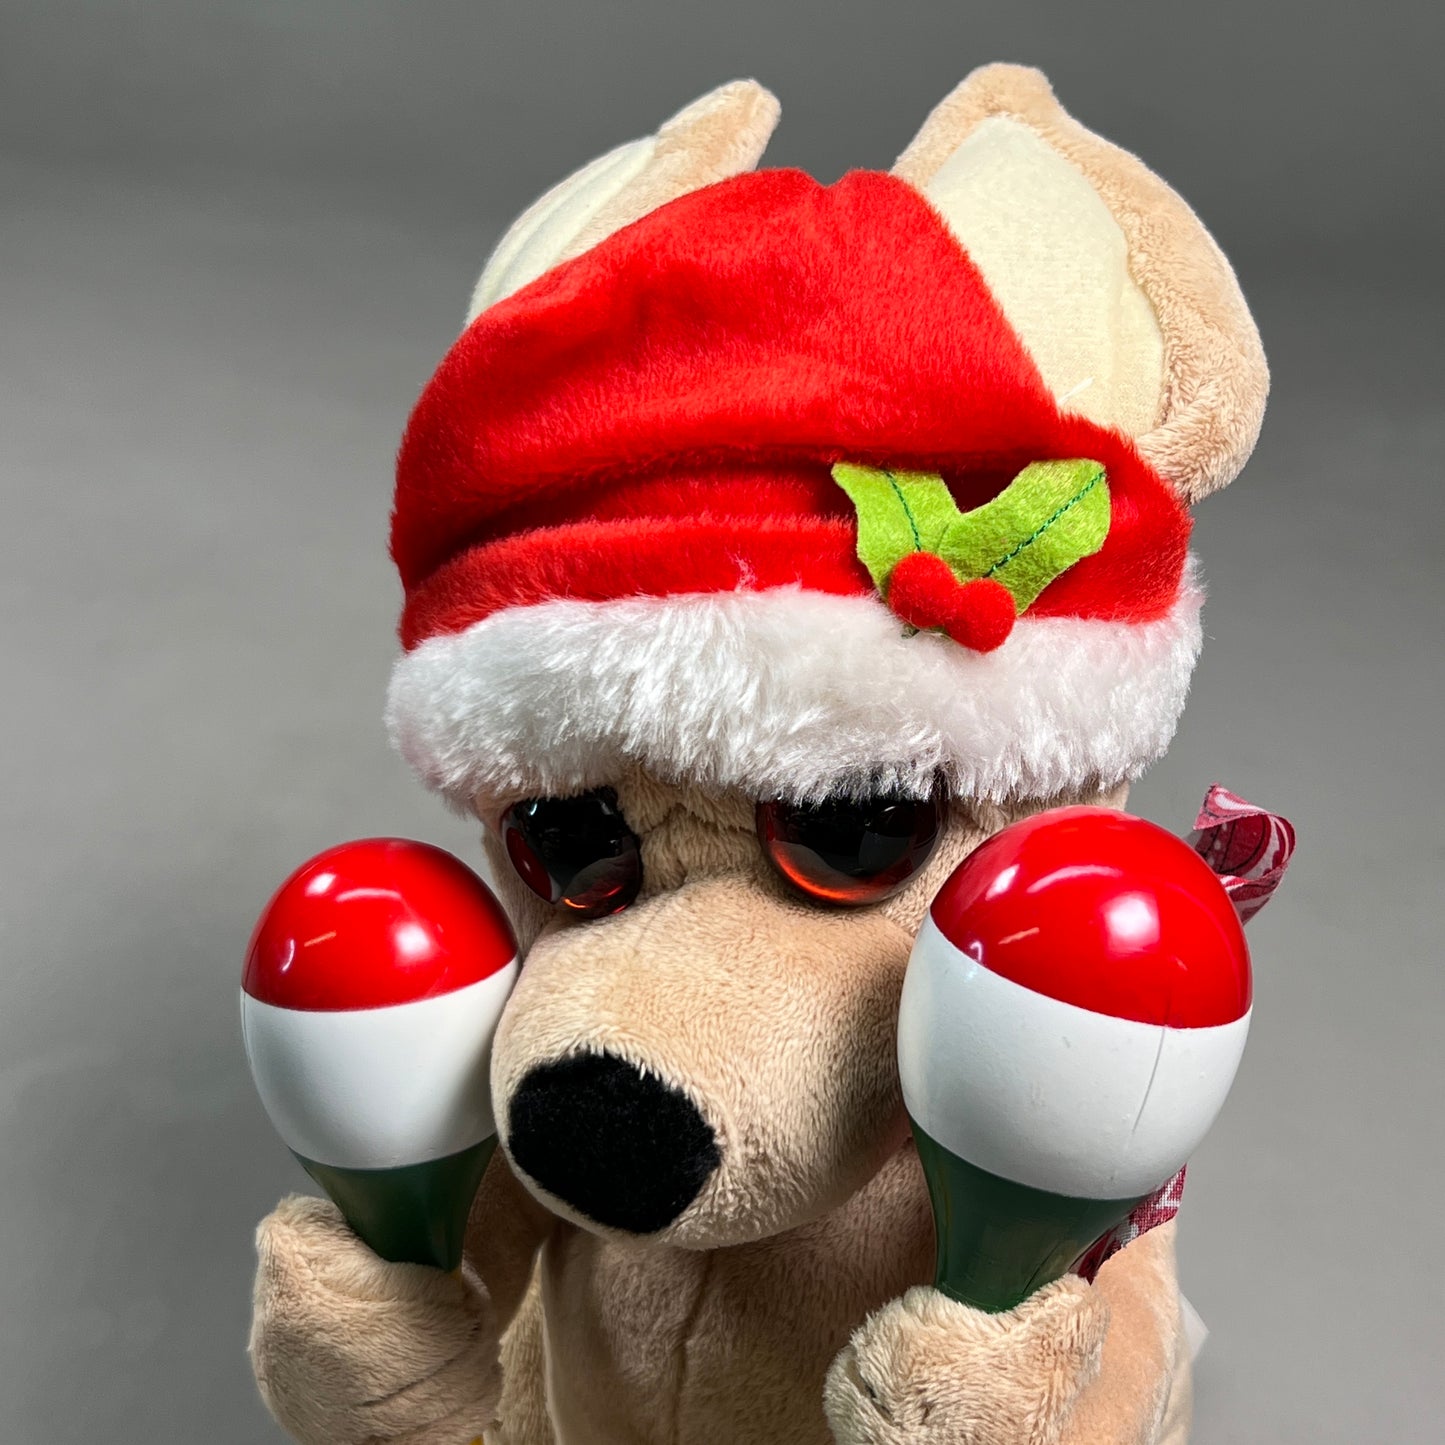 3-PK! RAZ IMPORTS 11.5" La Bomba Animated Plush Toy Chihuahua Dog 3223259 (New)